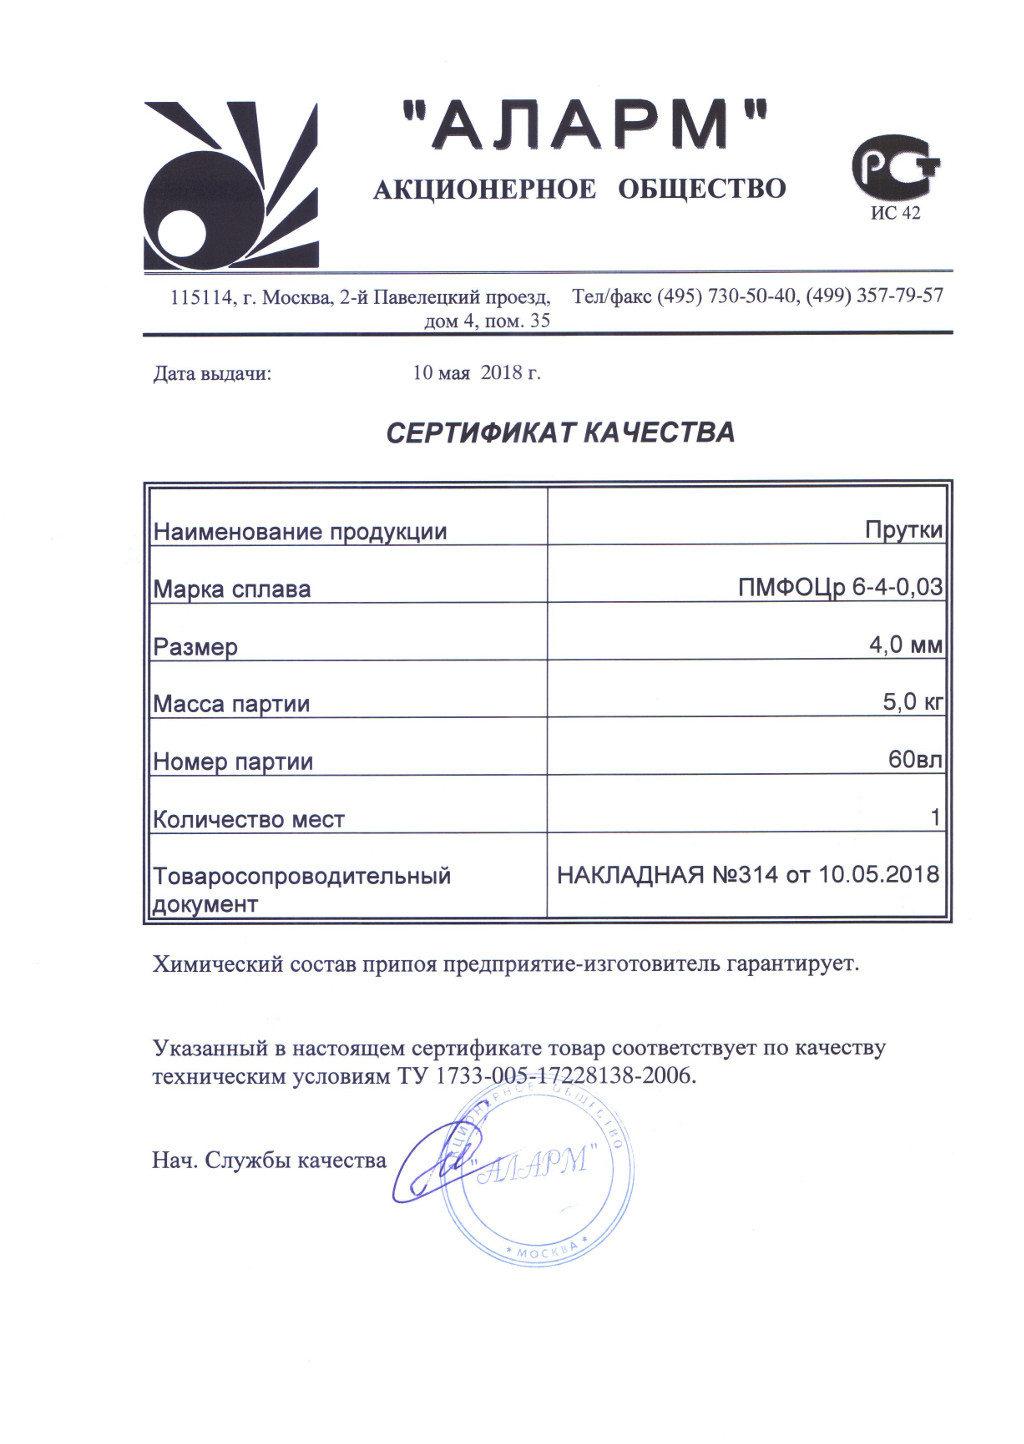 Сертификат припой ПМФОЦр 6-4-0.03